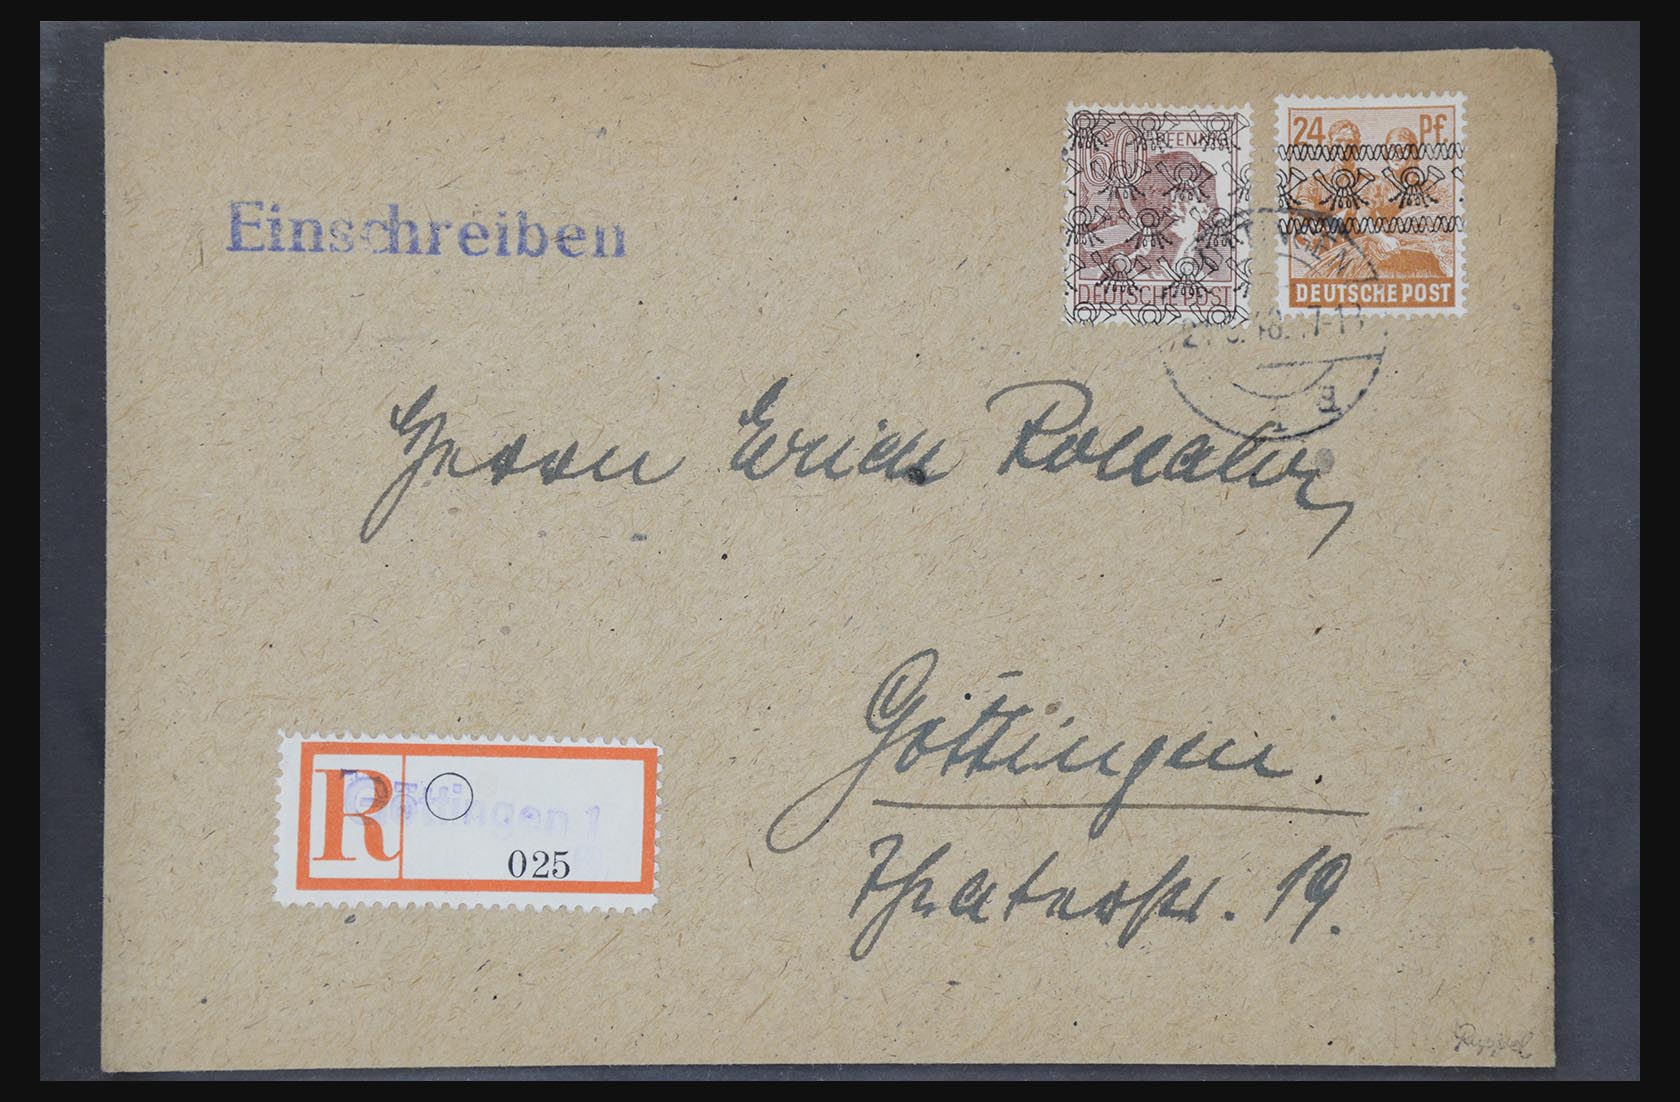 31581 009 - 31581 Duitsland brieven en FDC's 1945-1981.